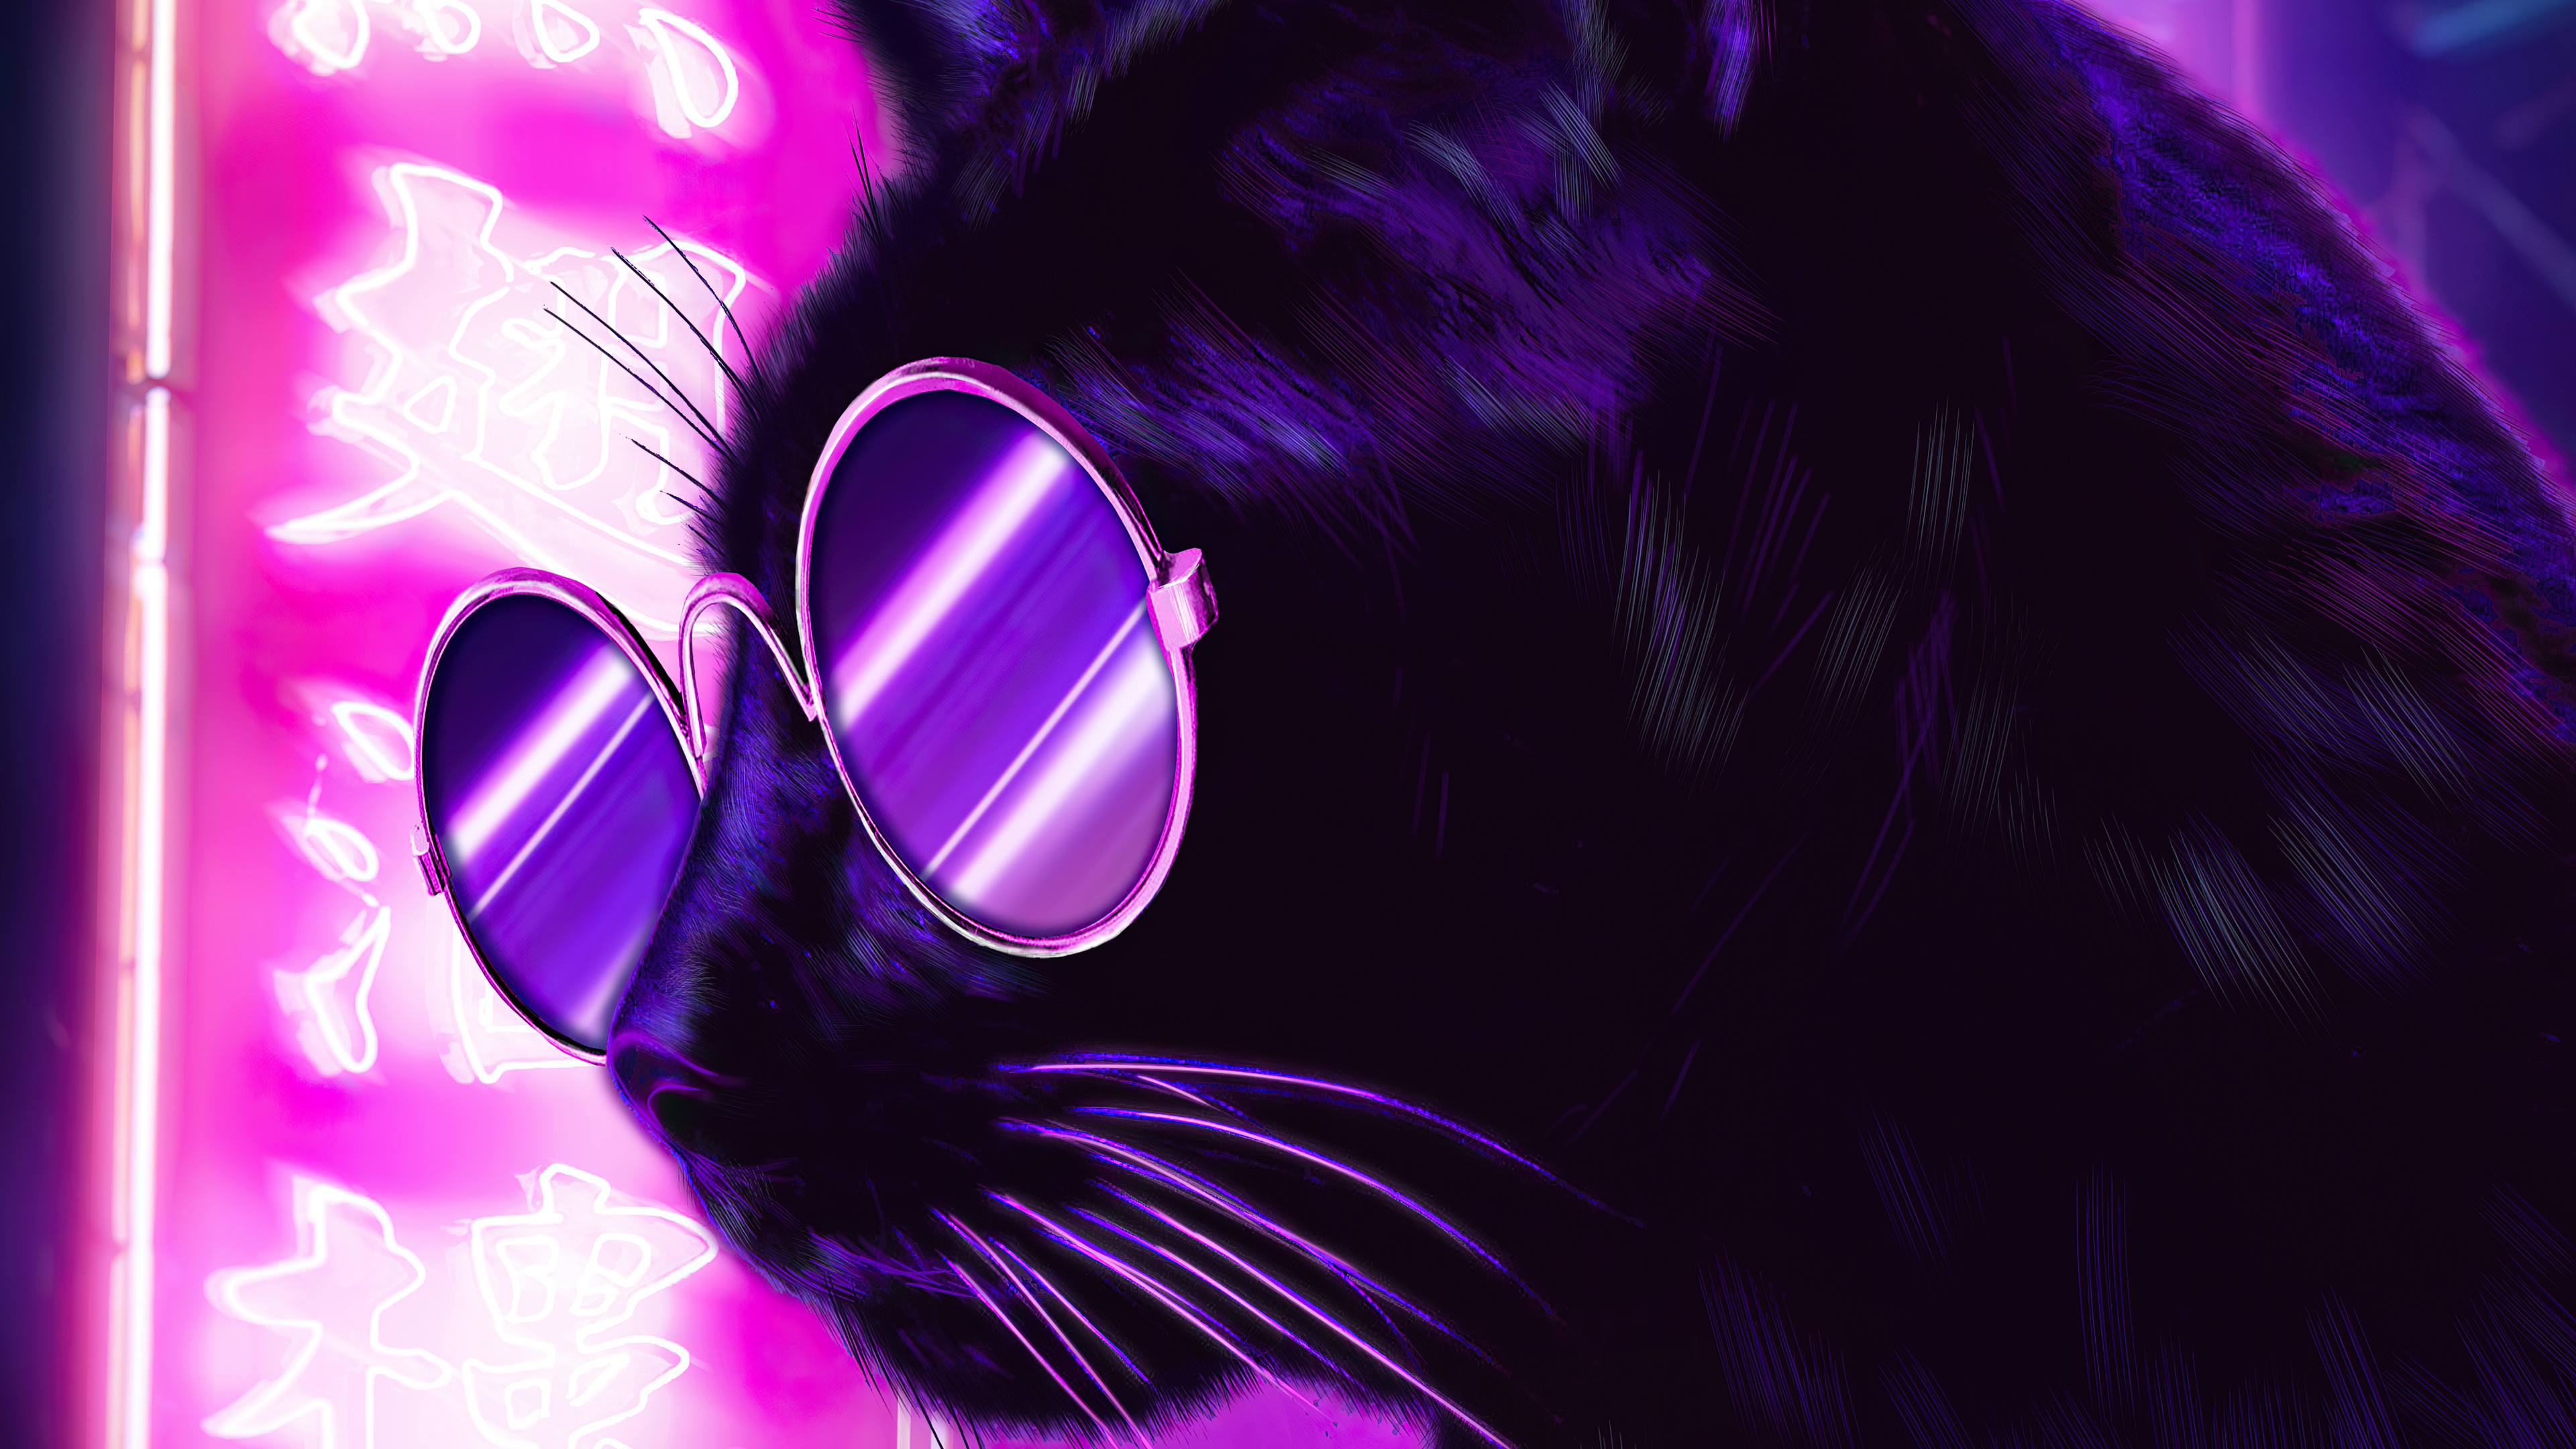 Mèo kính neon đêm tím: Bạn có muốn đưa về nhà một chú mèo đáng yêu với bộ kính neon đẹp mắt không? Hãy xem ảnh để chiêm ngưỡng vẻ đẹp của chú mèo đang ngủ say trong đêm tím. Điều này sẽ khiến bạn cảm thấy thư thái và gần gũi với tình yêu động vật của mình.